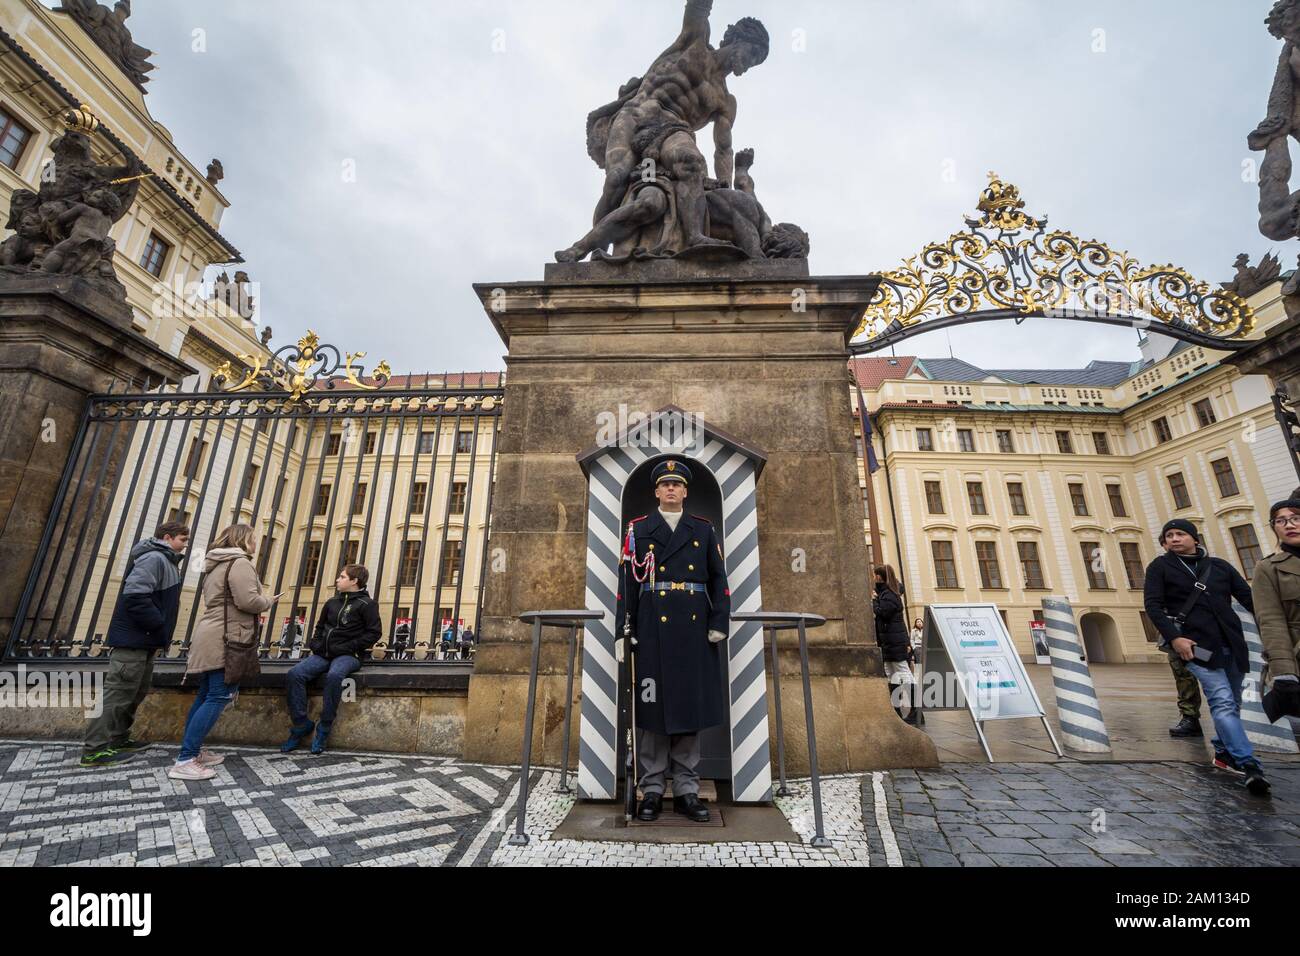 Prag, TSCHECHIEN - 2. NOVEMBER 2019: Prager Burgwache, auch Hradni Straz genannt, steht in Uniform mit seinem Gewehr vor der Burg. Hradni S Stockfoto